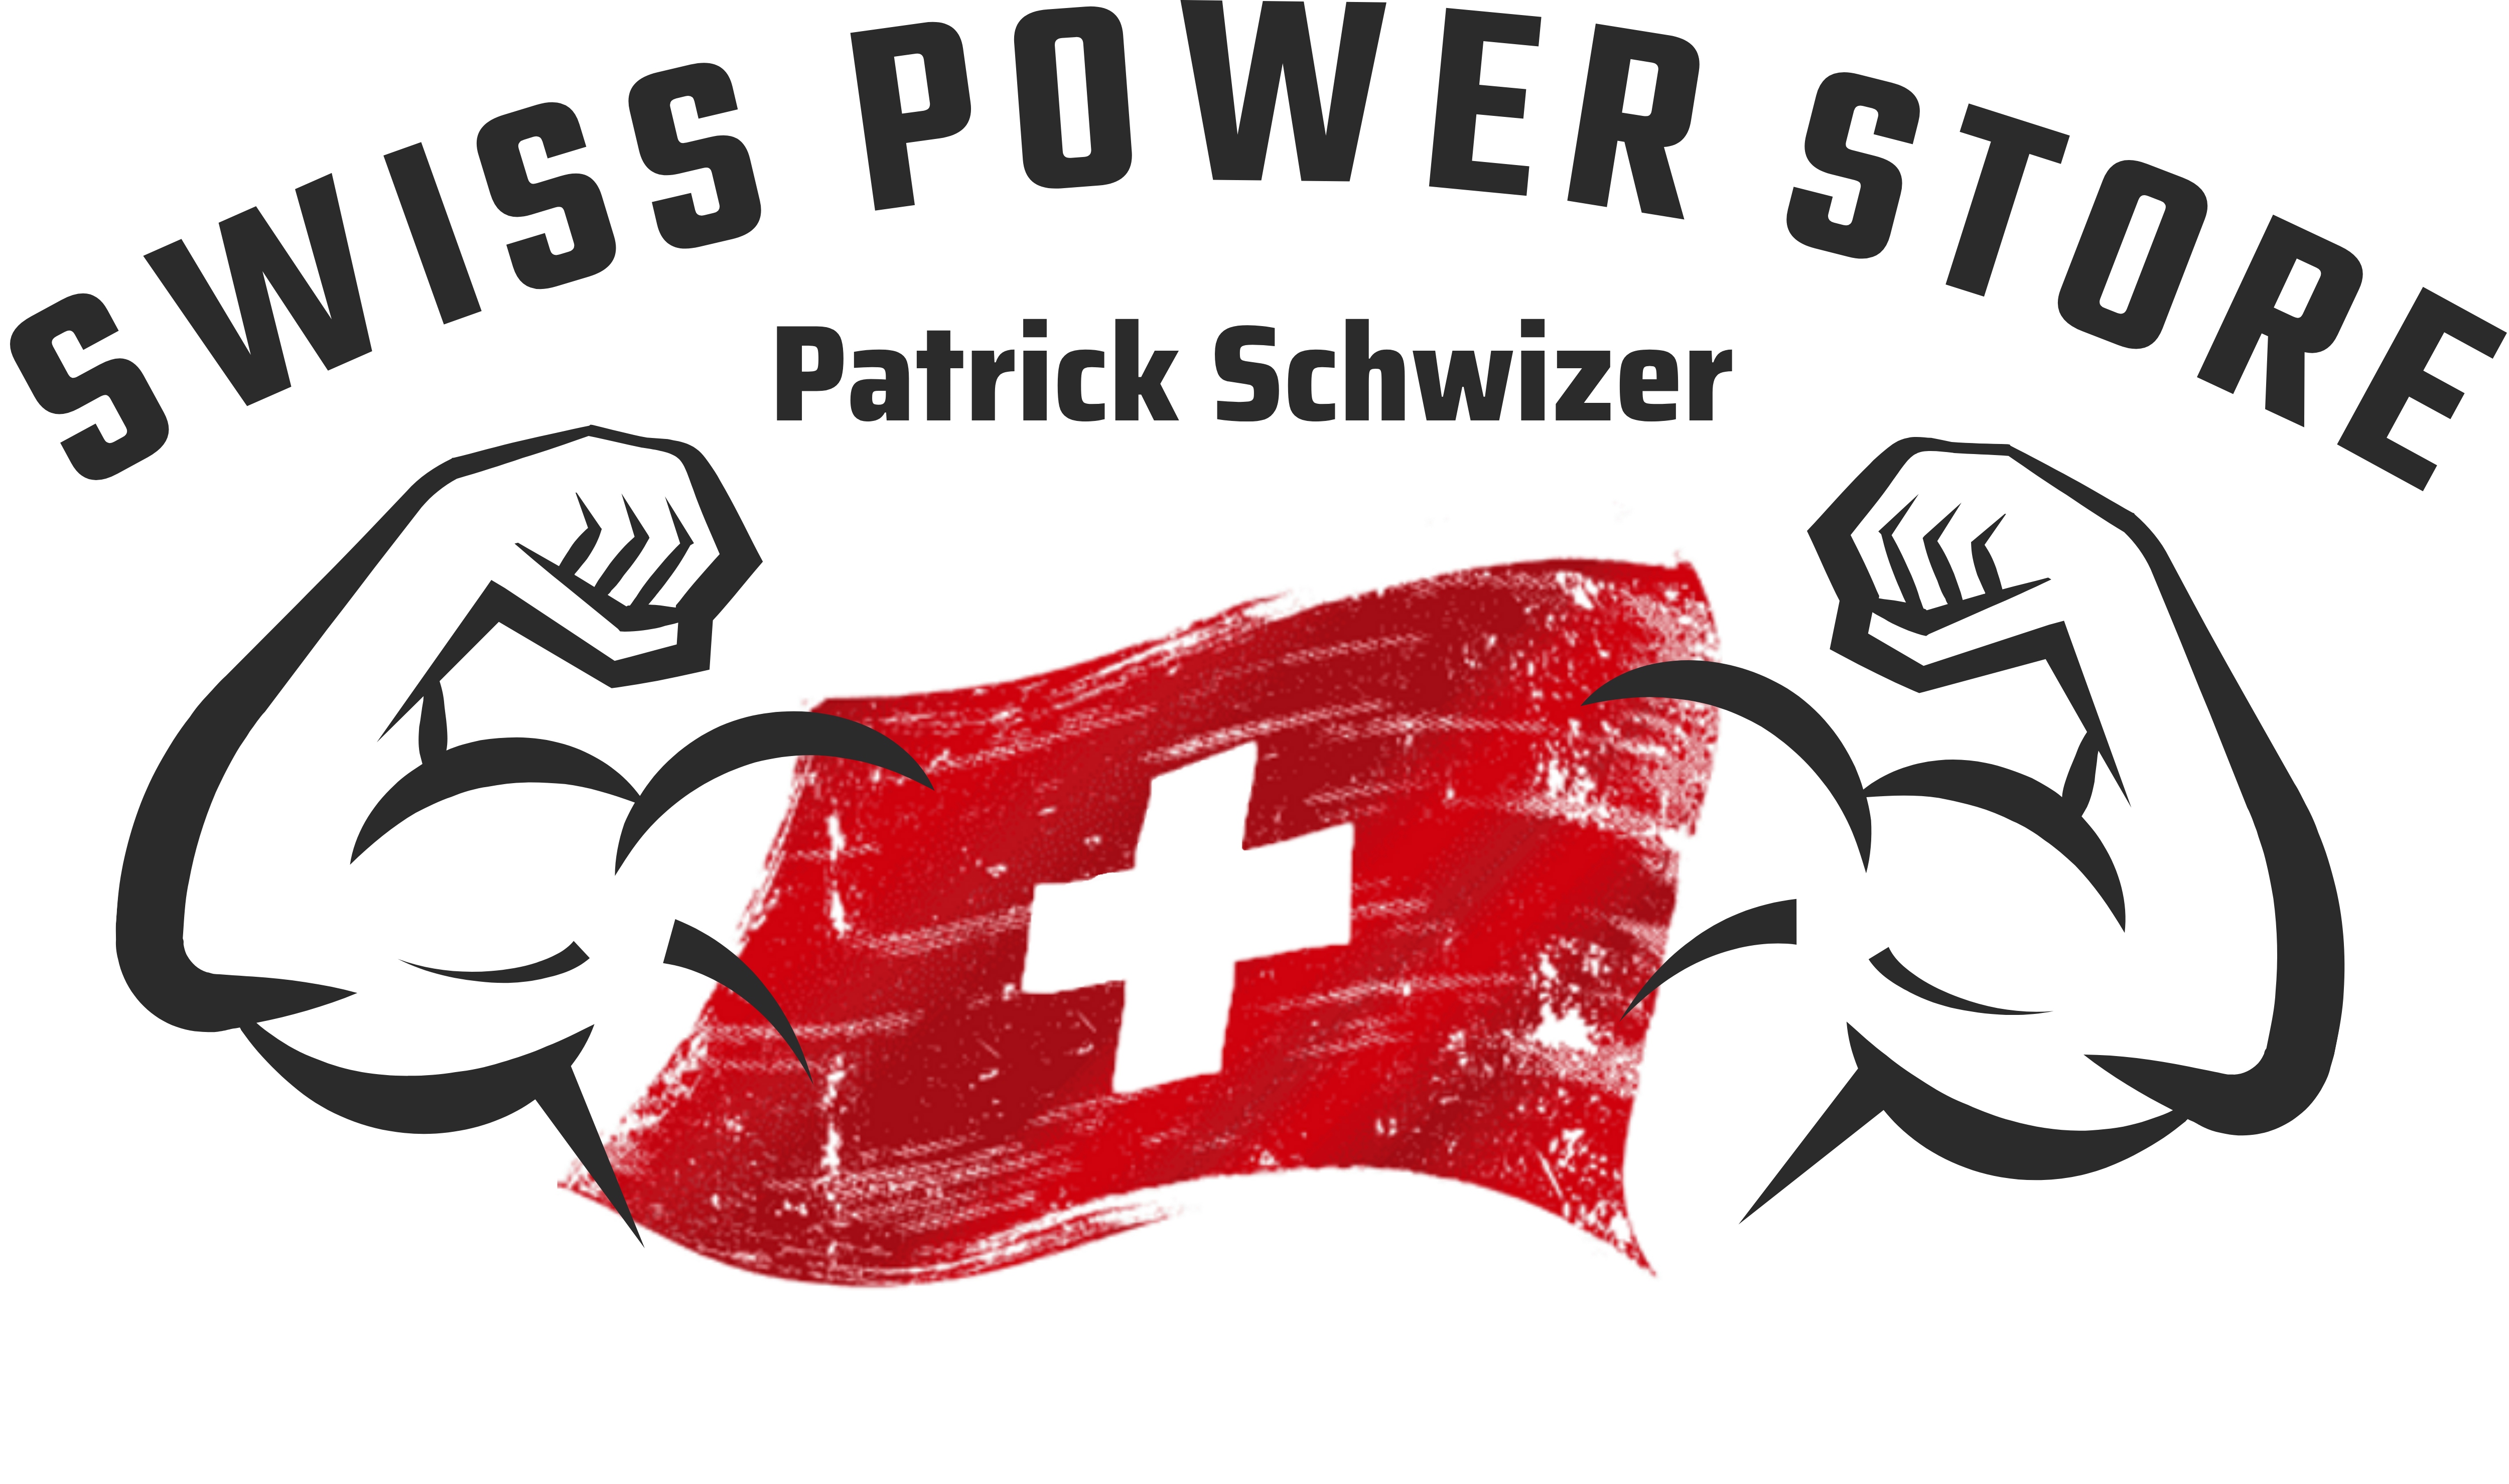 Swiss Power Store